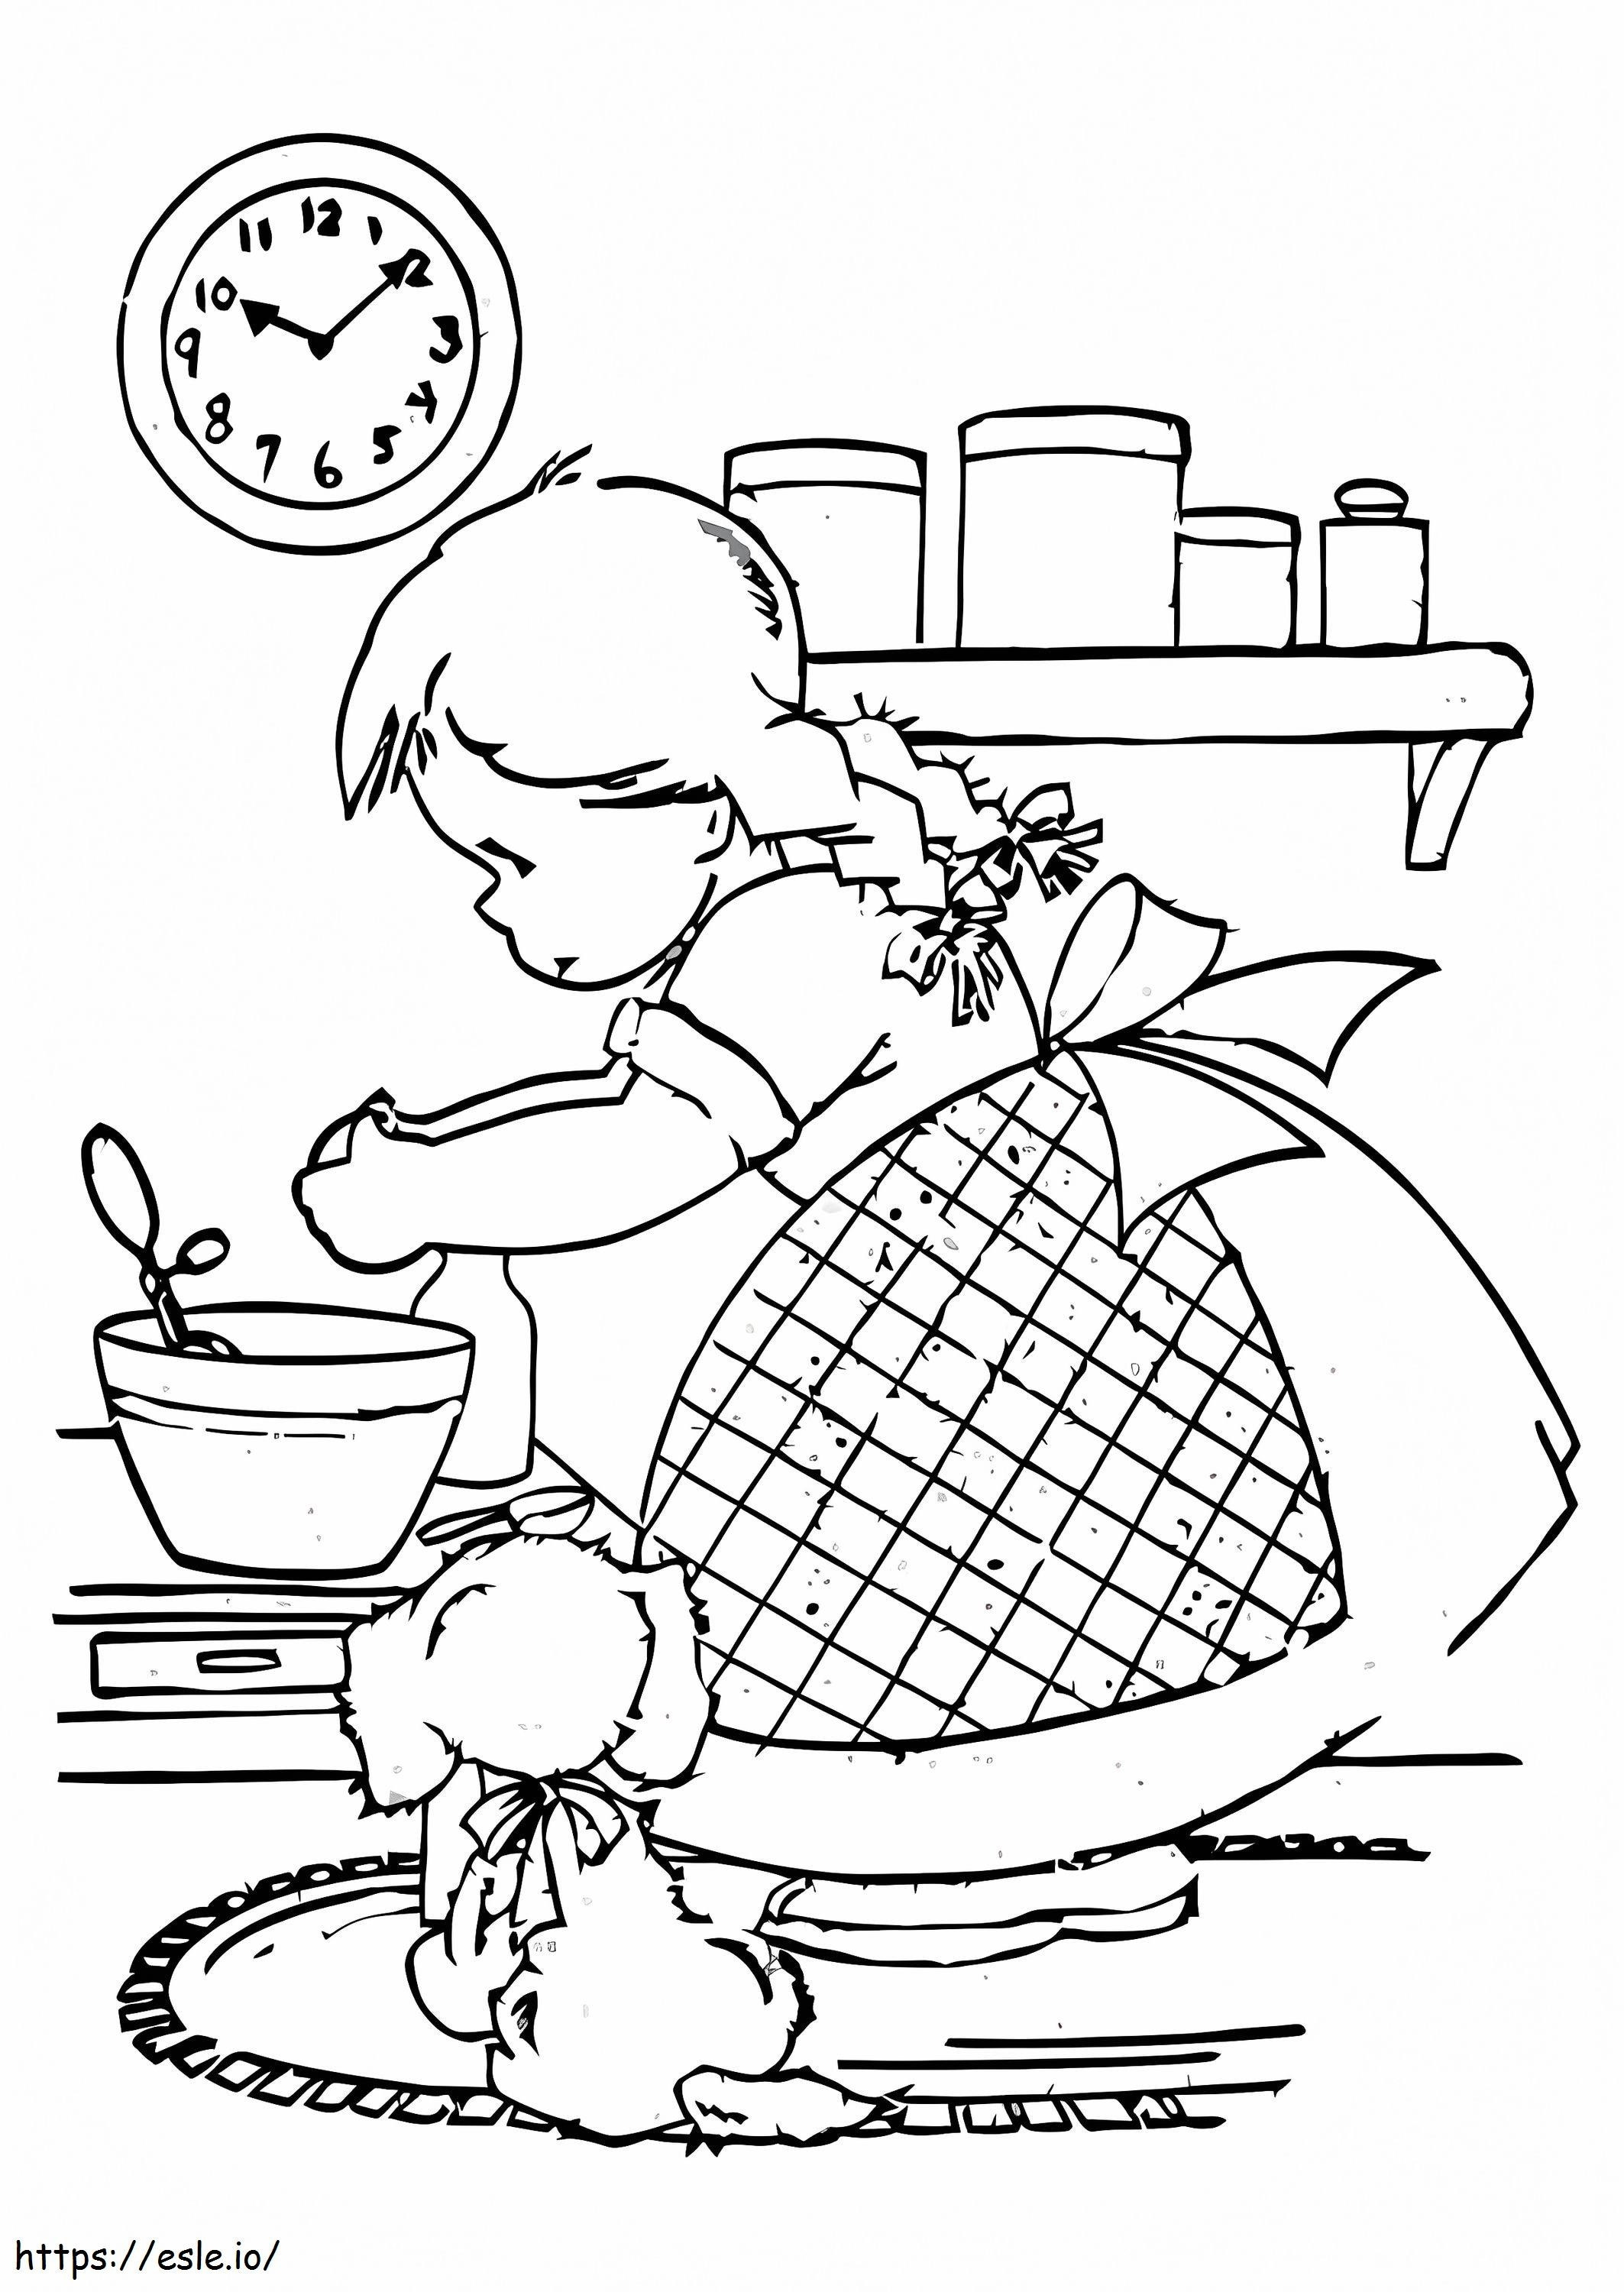 Fată care gătește și câine în bucătărie de colorat